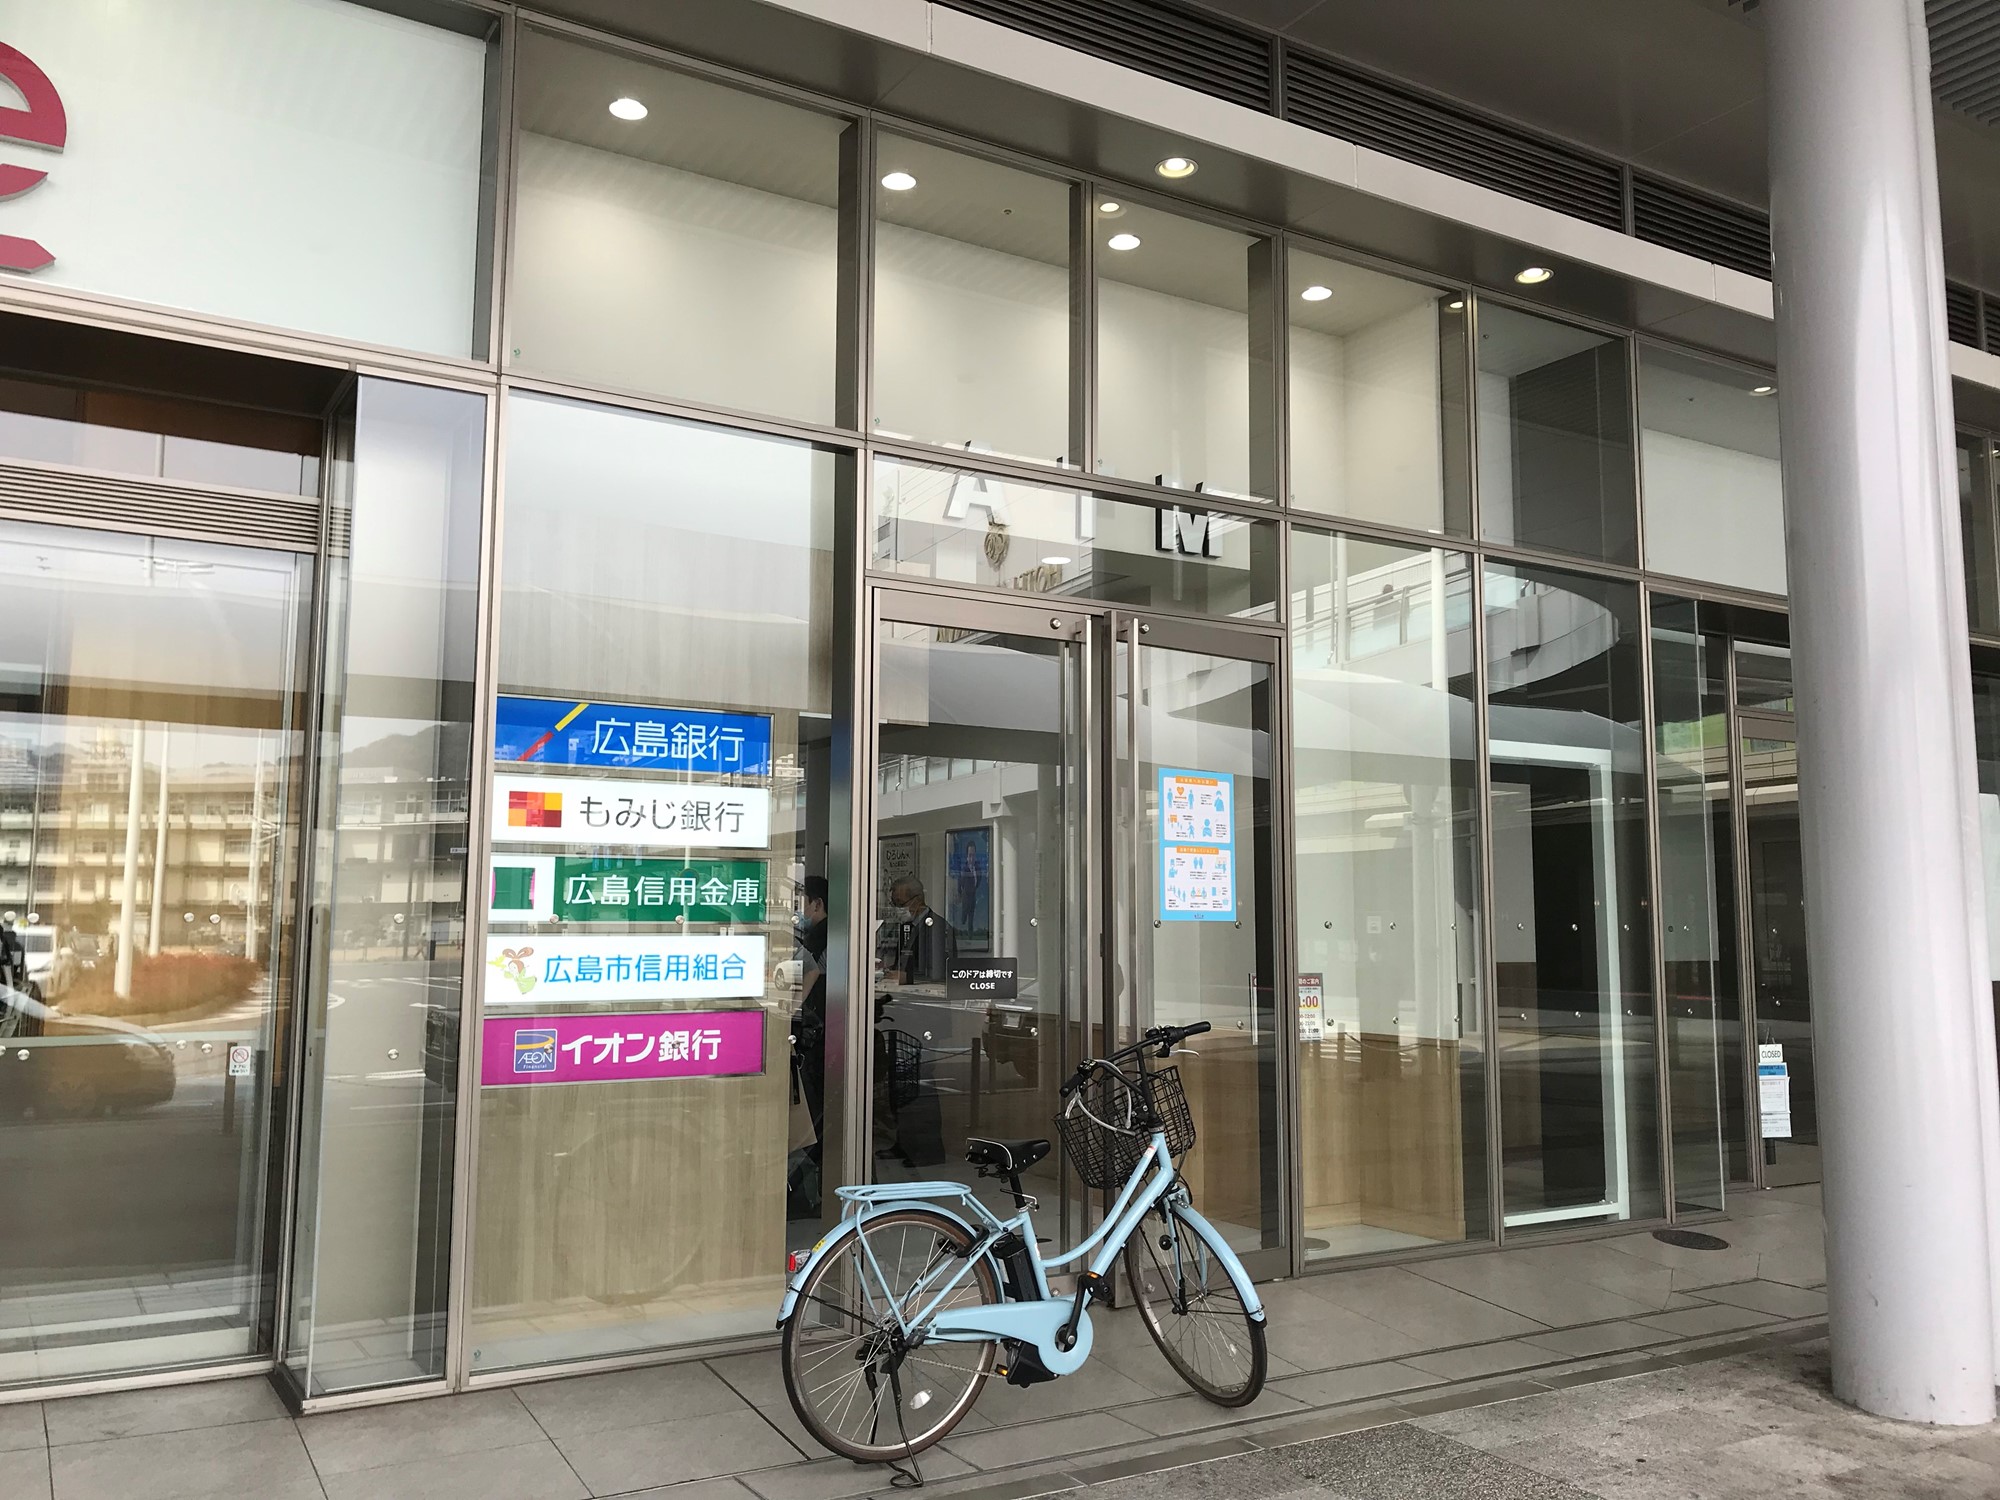 広島駅のekie 1Fのイオン銀行ATM入り口